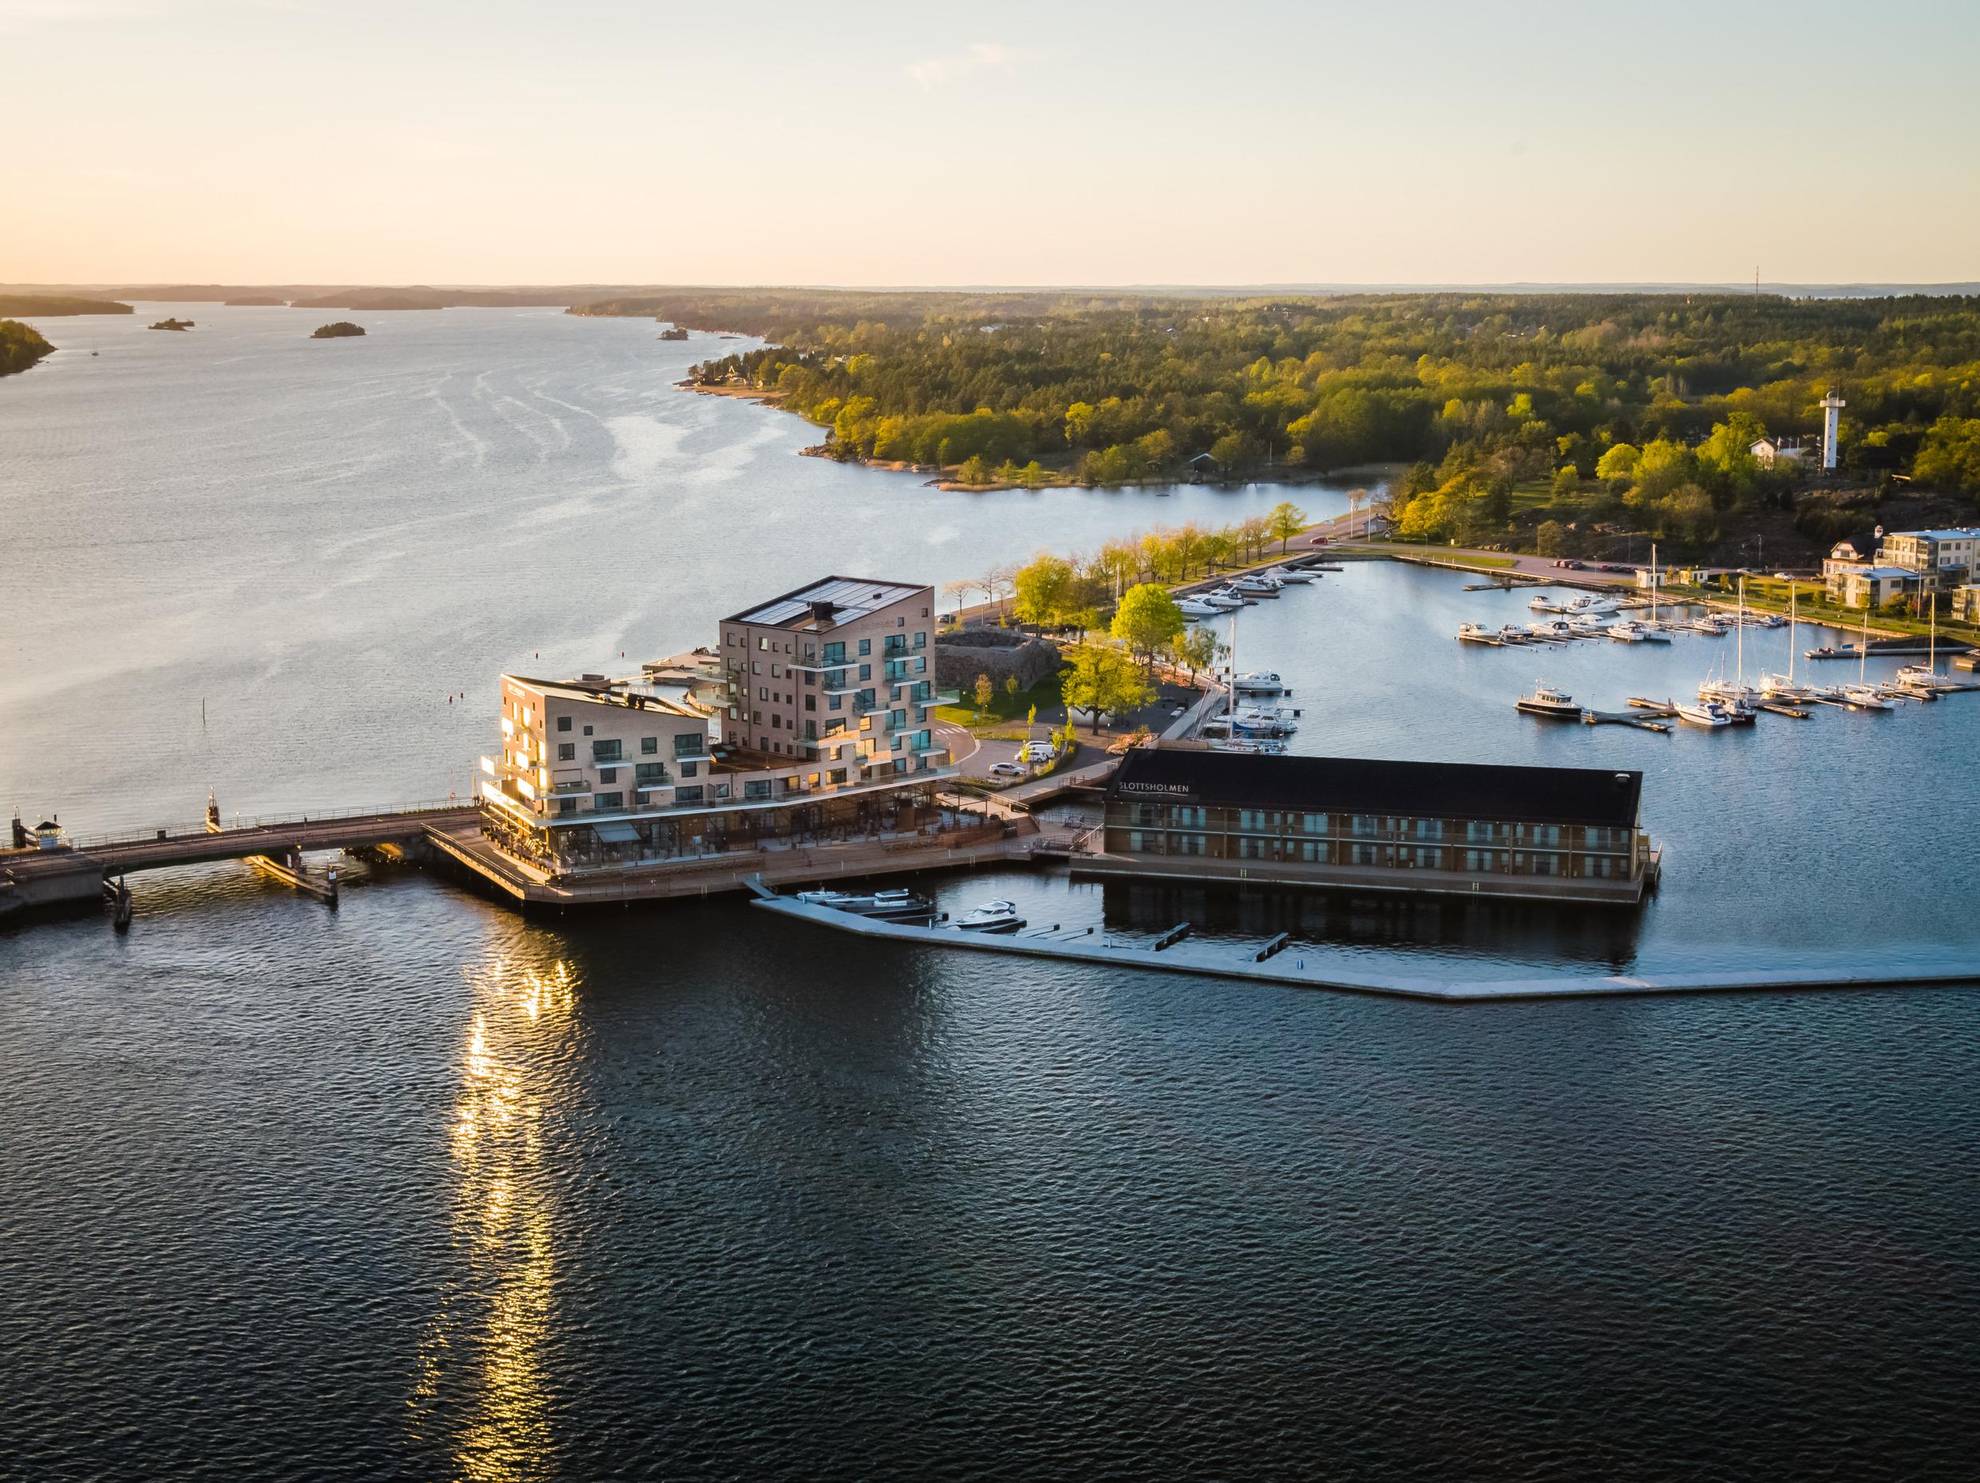 Luchtfoto van het hotel Slottsholmen en zijn grote terras, omgeven door water en gelegen aan een kleine haven.